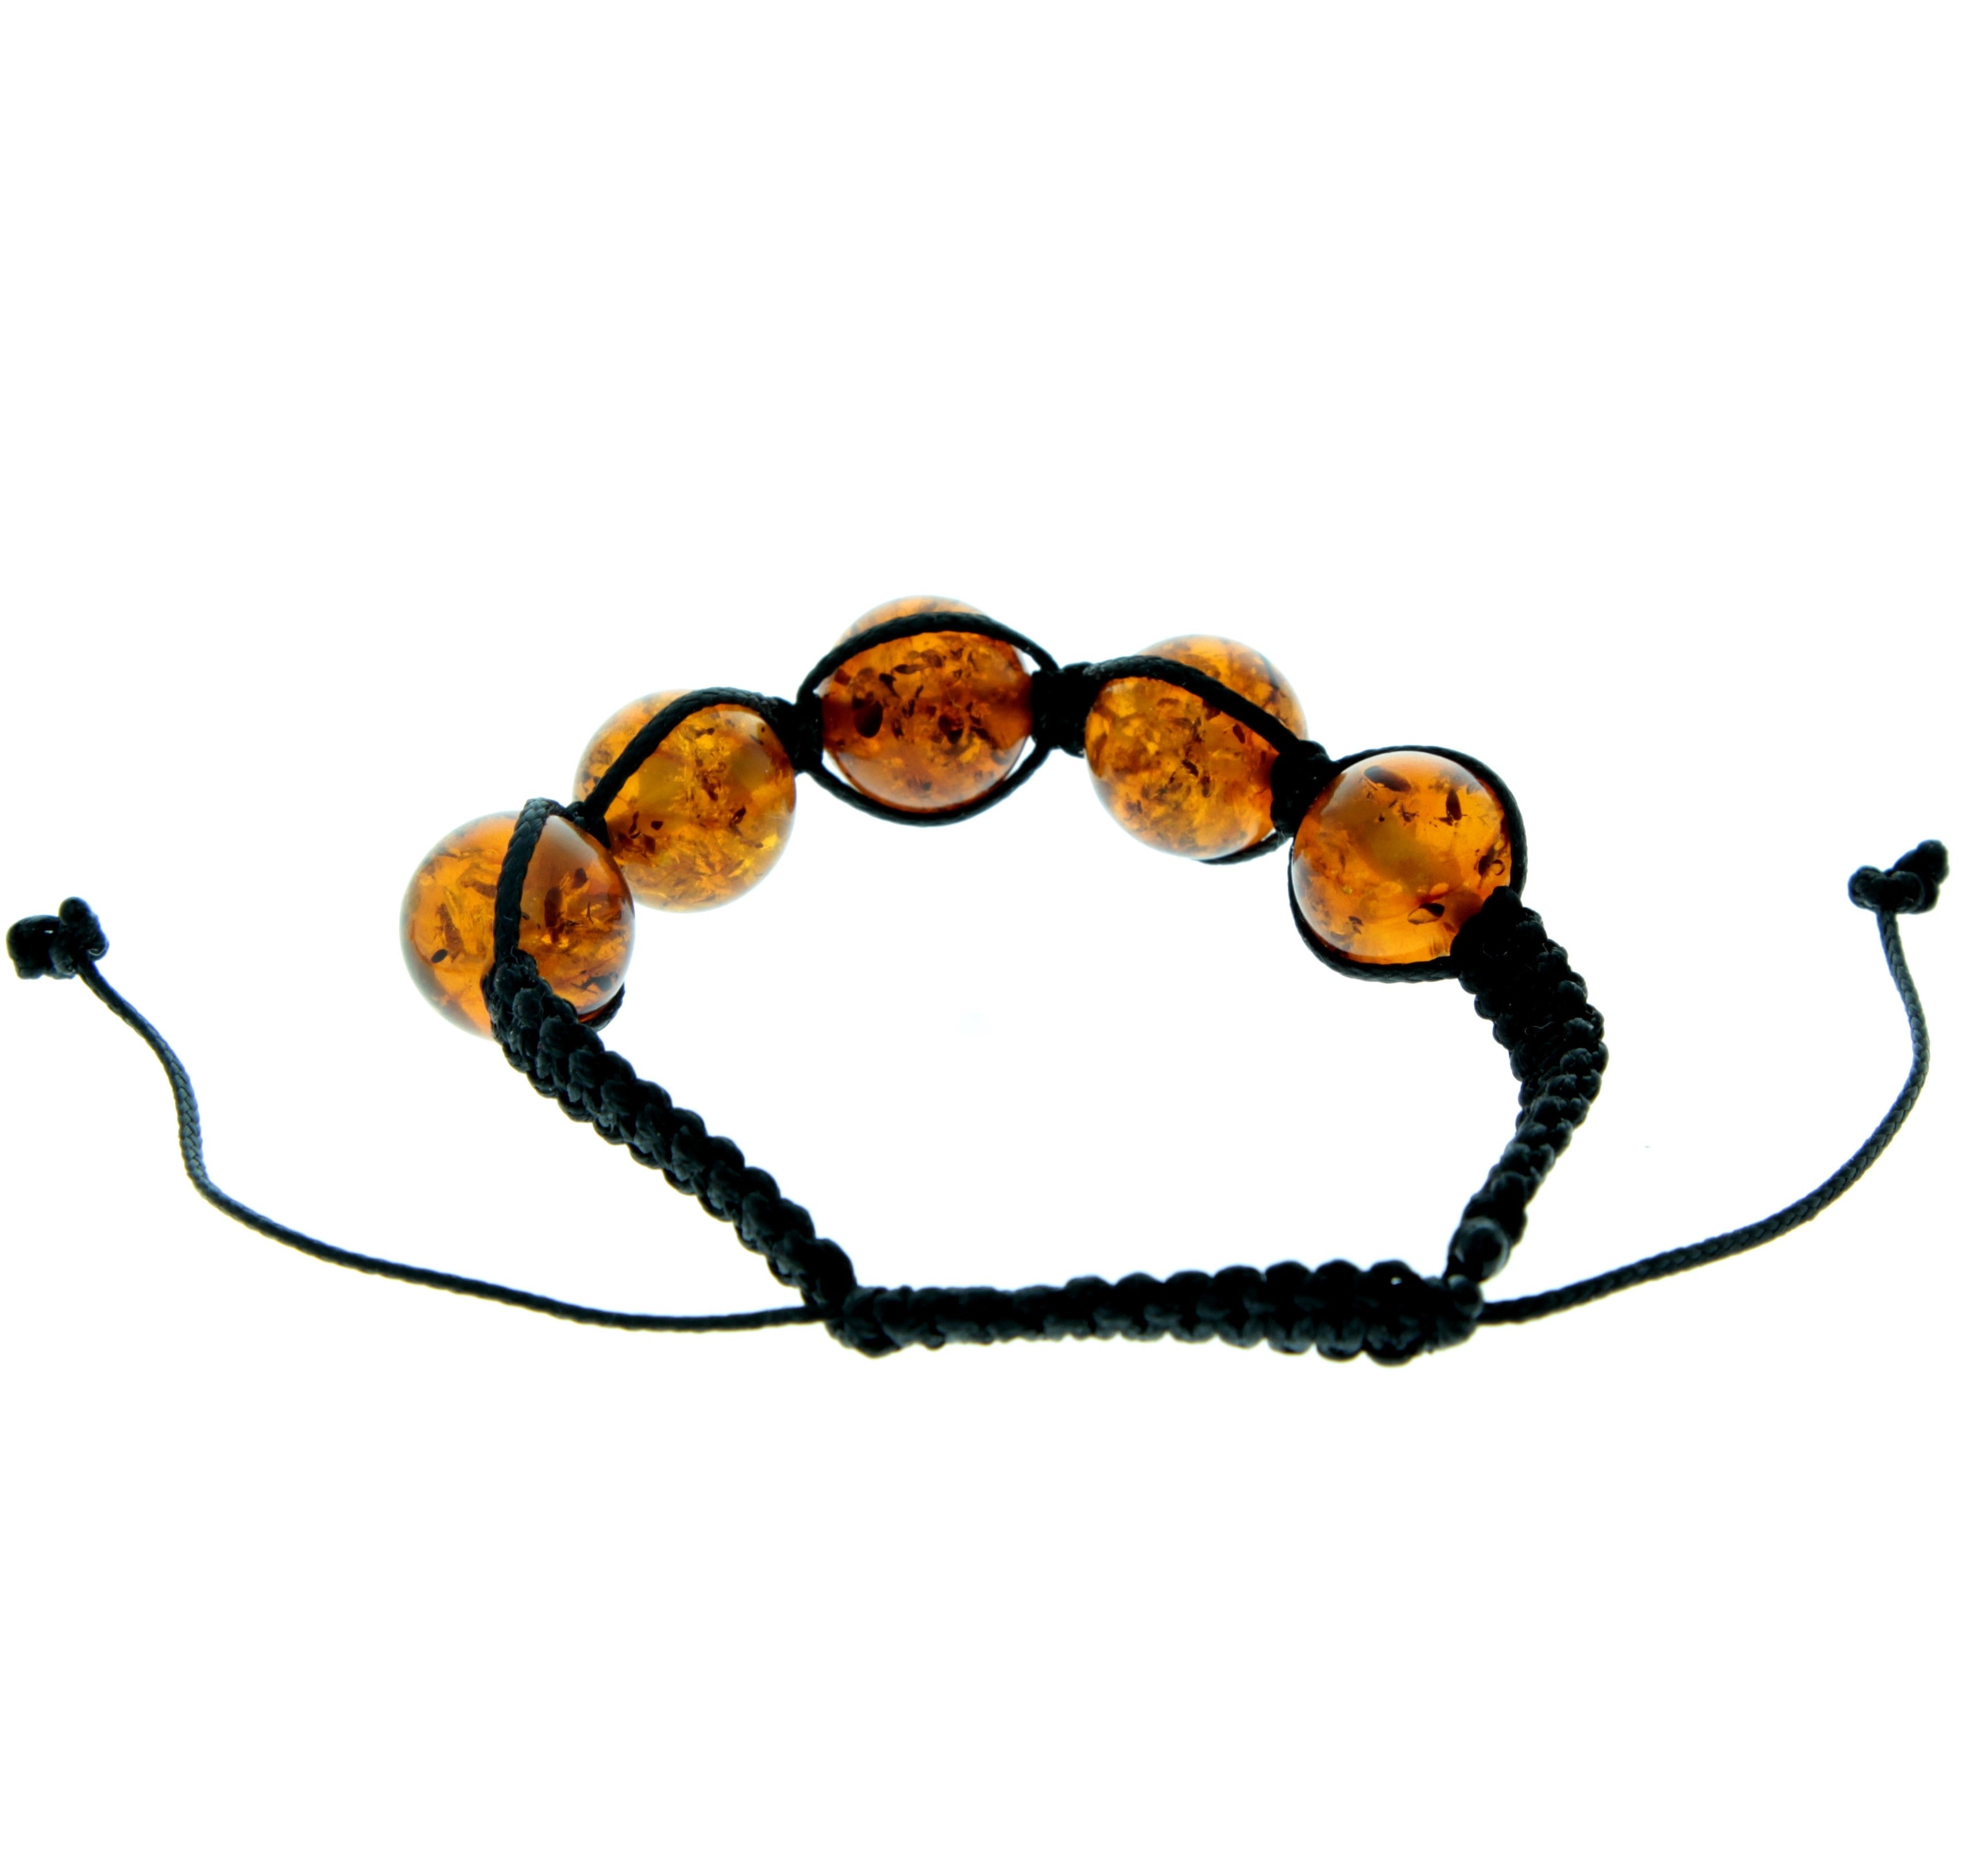 Genuine Baltic Amber Adjustable Bracelet for Men with Amber Balls - MB020